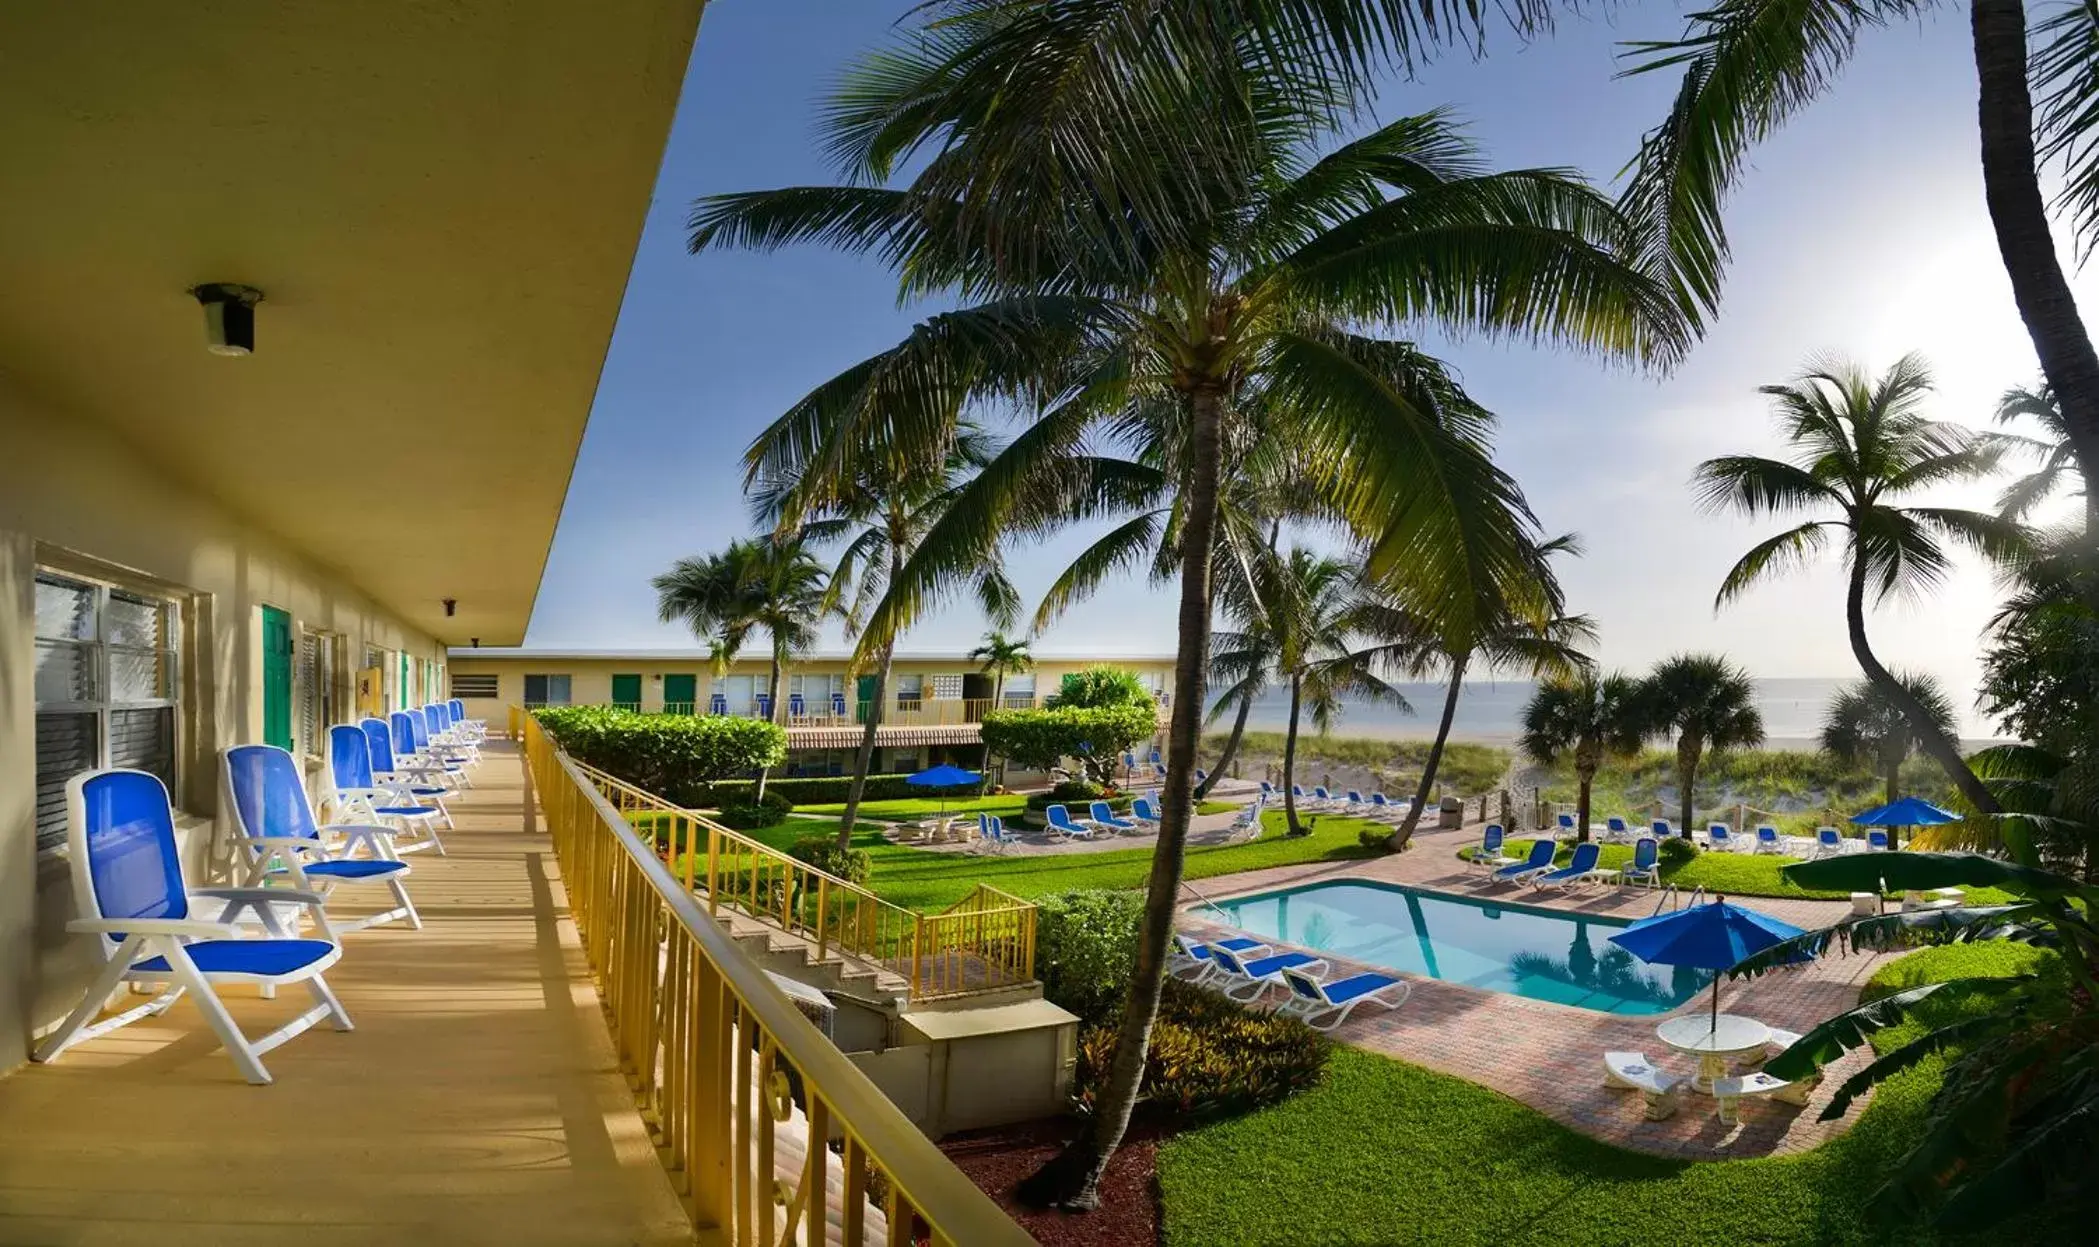 Property building, Swimming Pool in Tropic Seas Resort